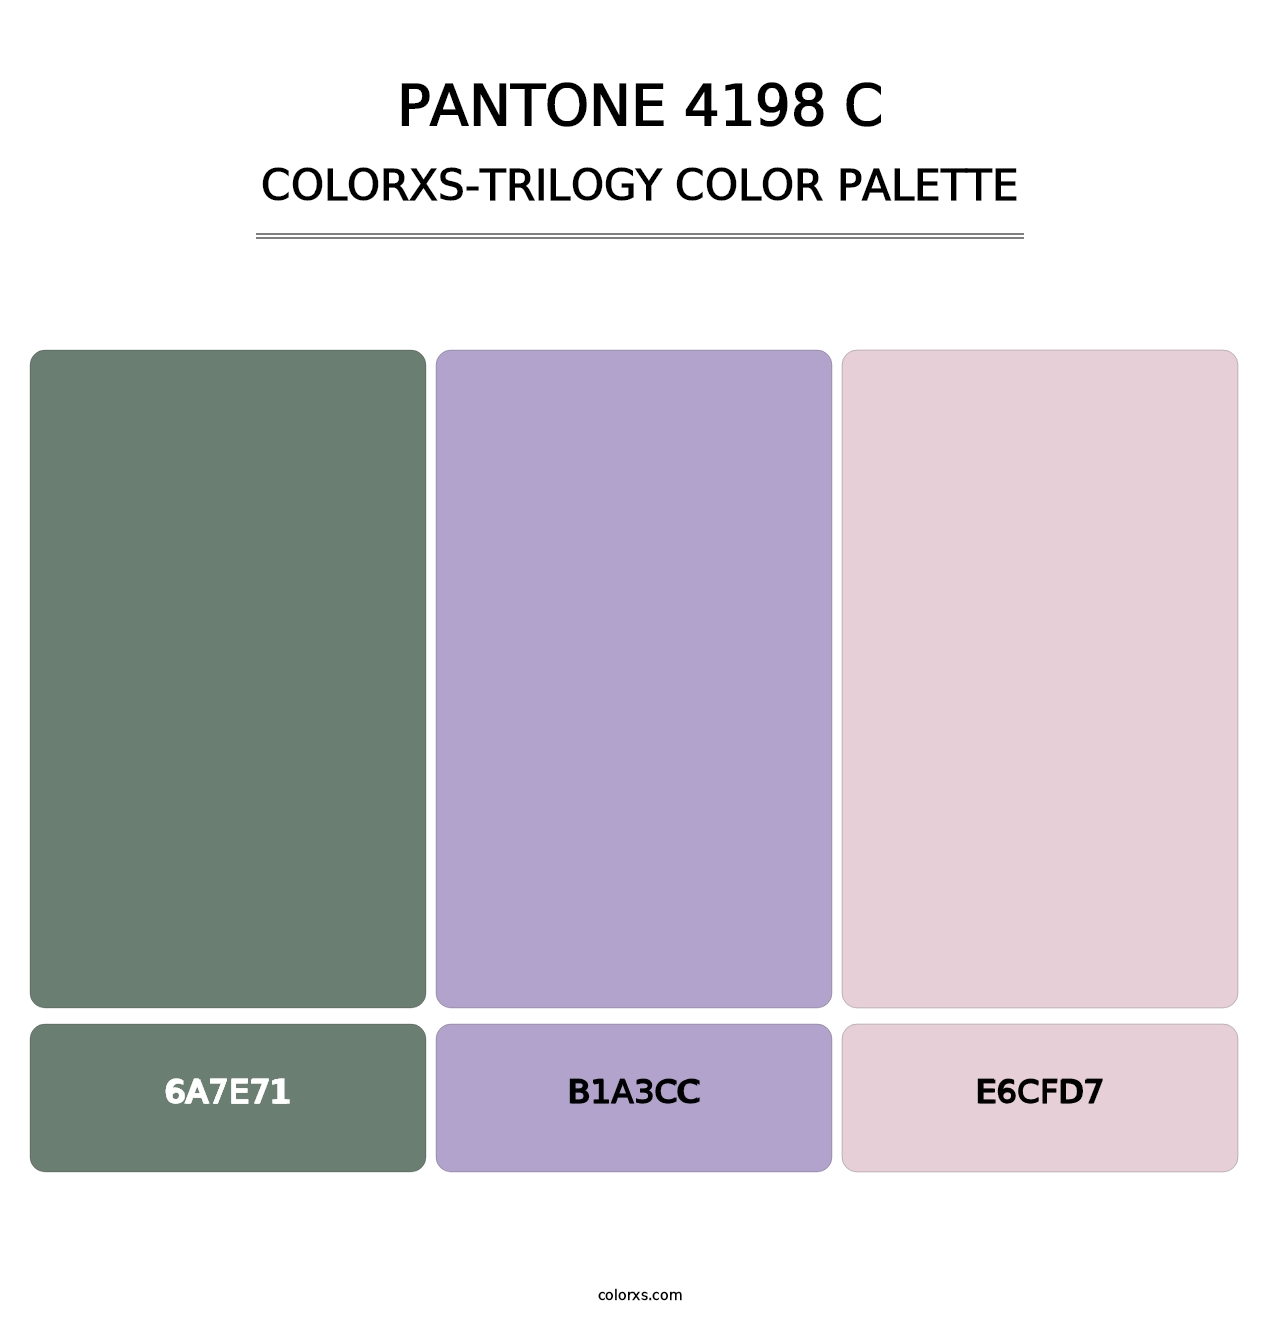 PANTONE 4198 C - Colorxs Trilogy Palette